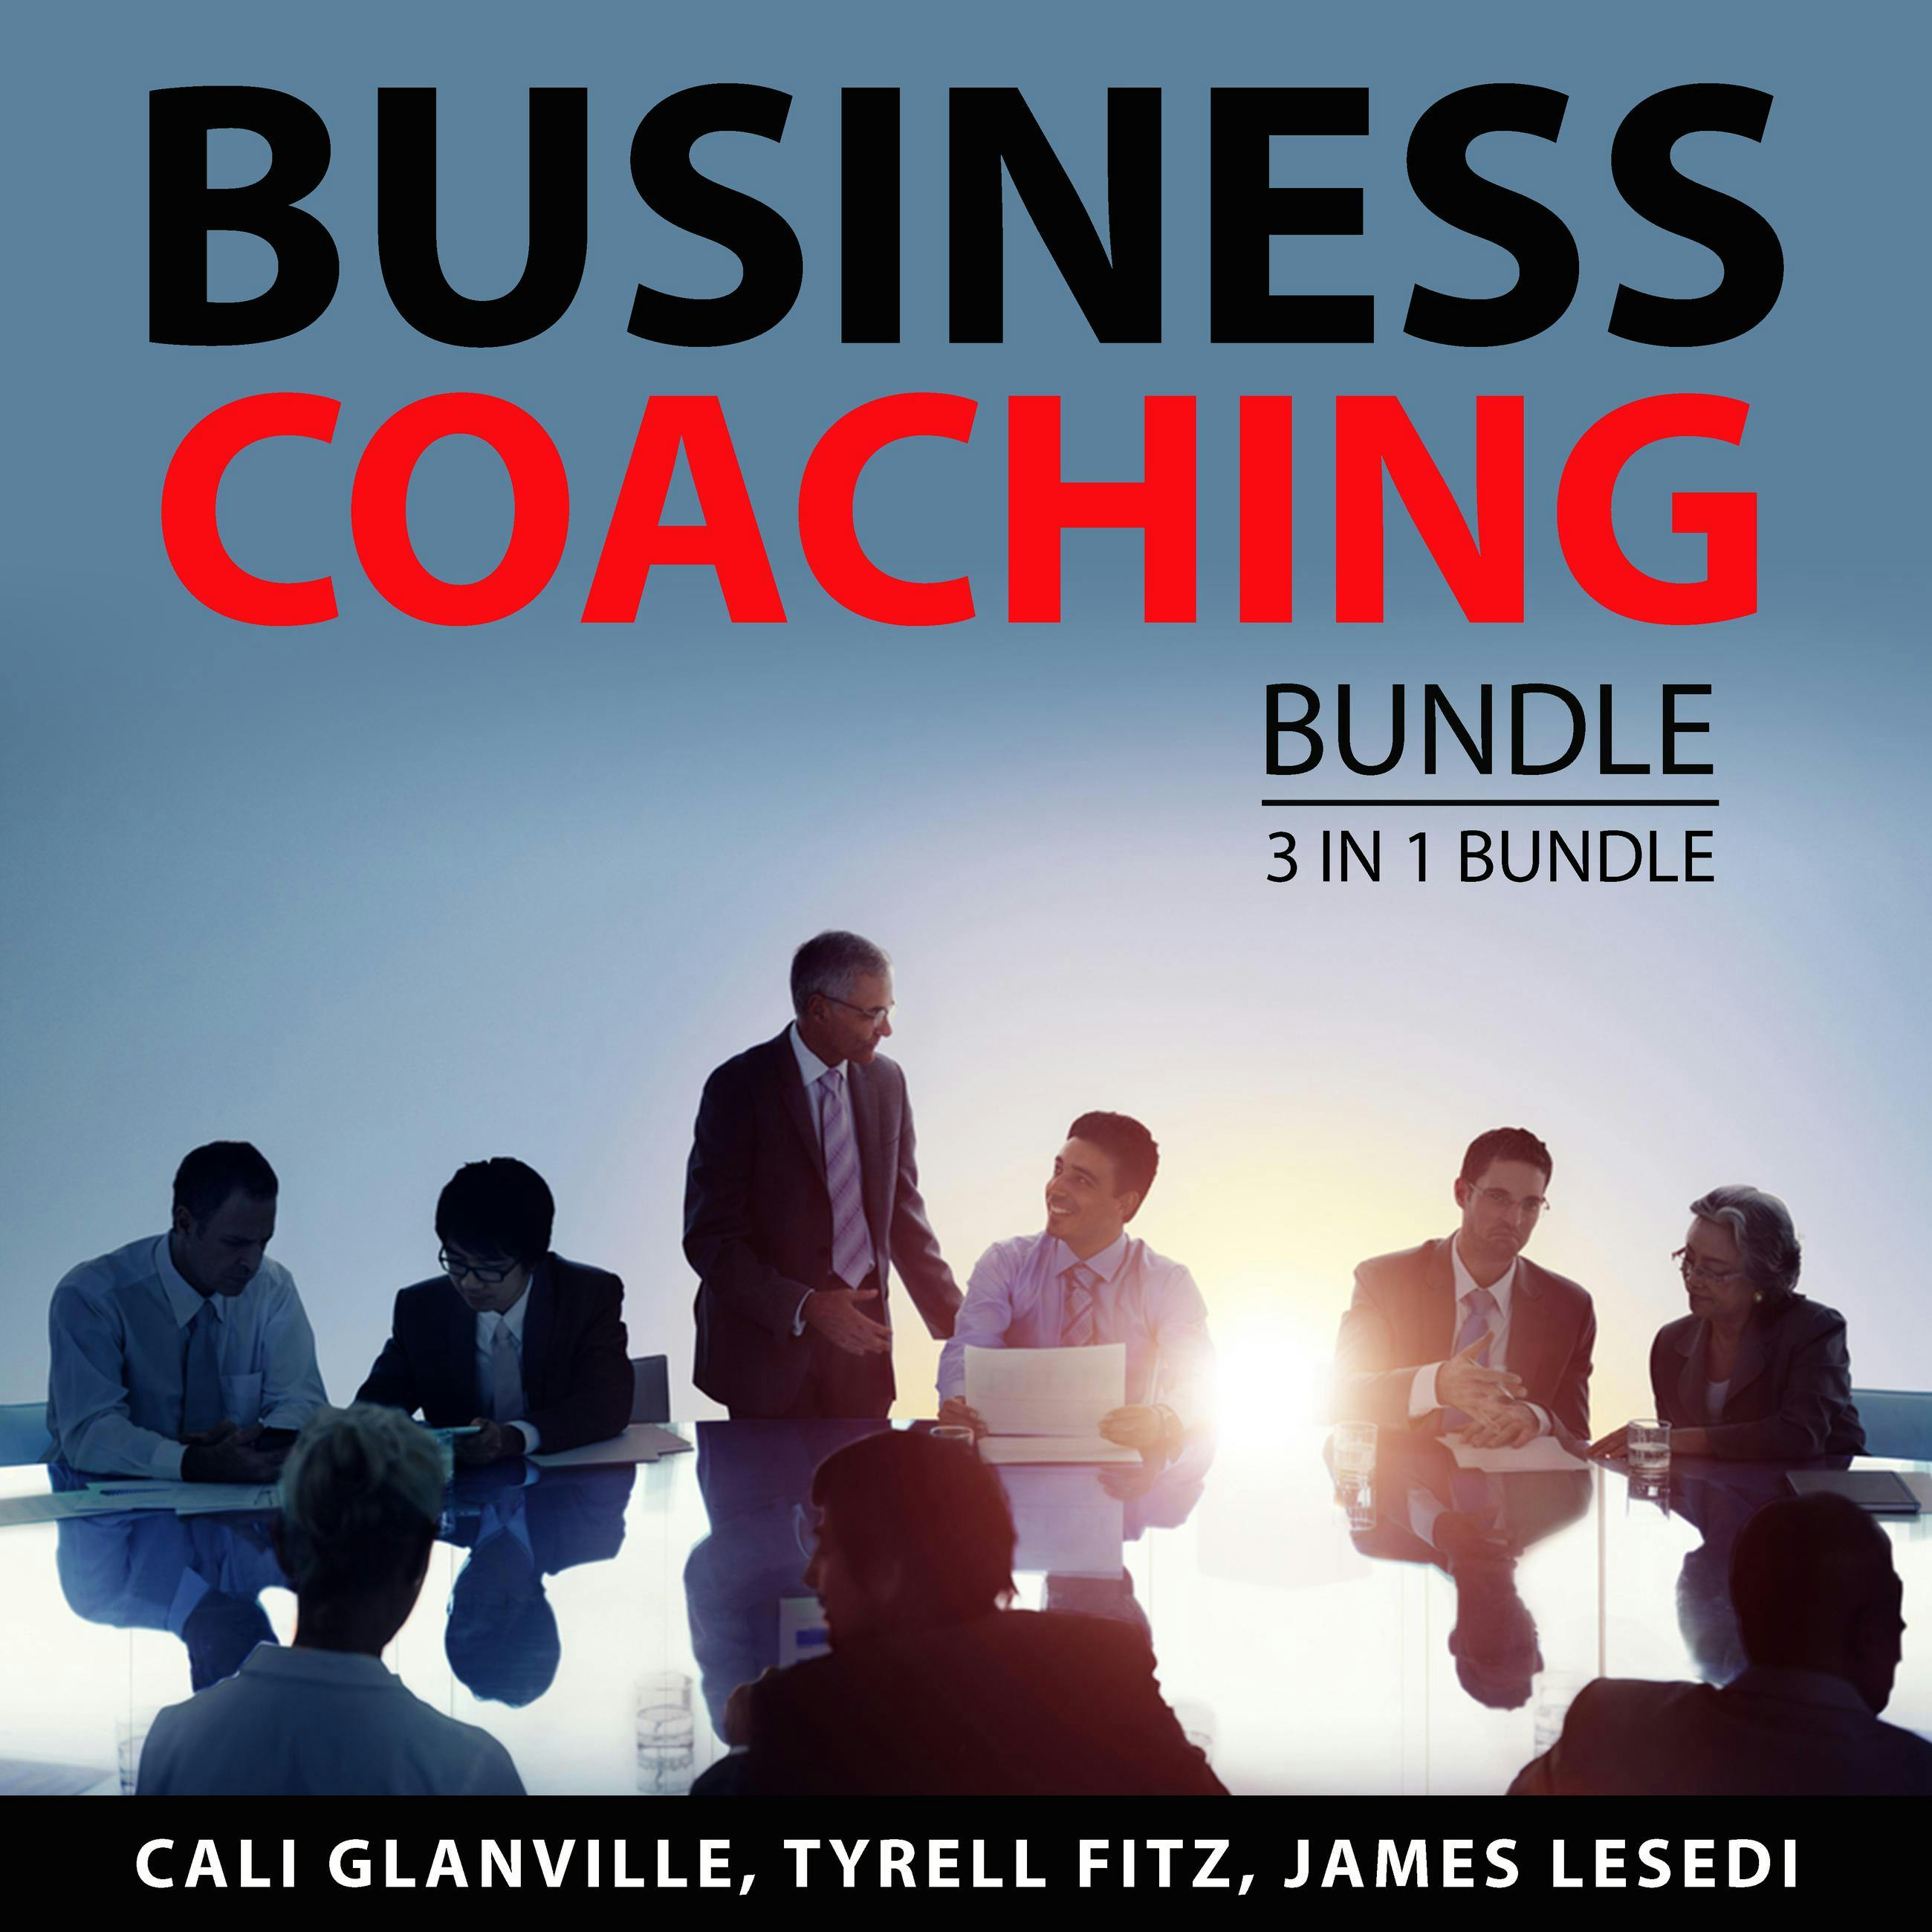 Business Coaching Bundle, 3 in 1 Bundle: Coaching Business Bible, Coaching Business Principles, and Online Coaching Career - undefined